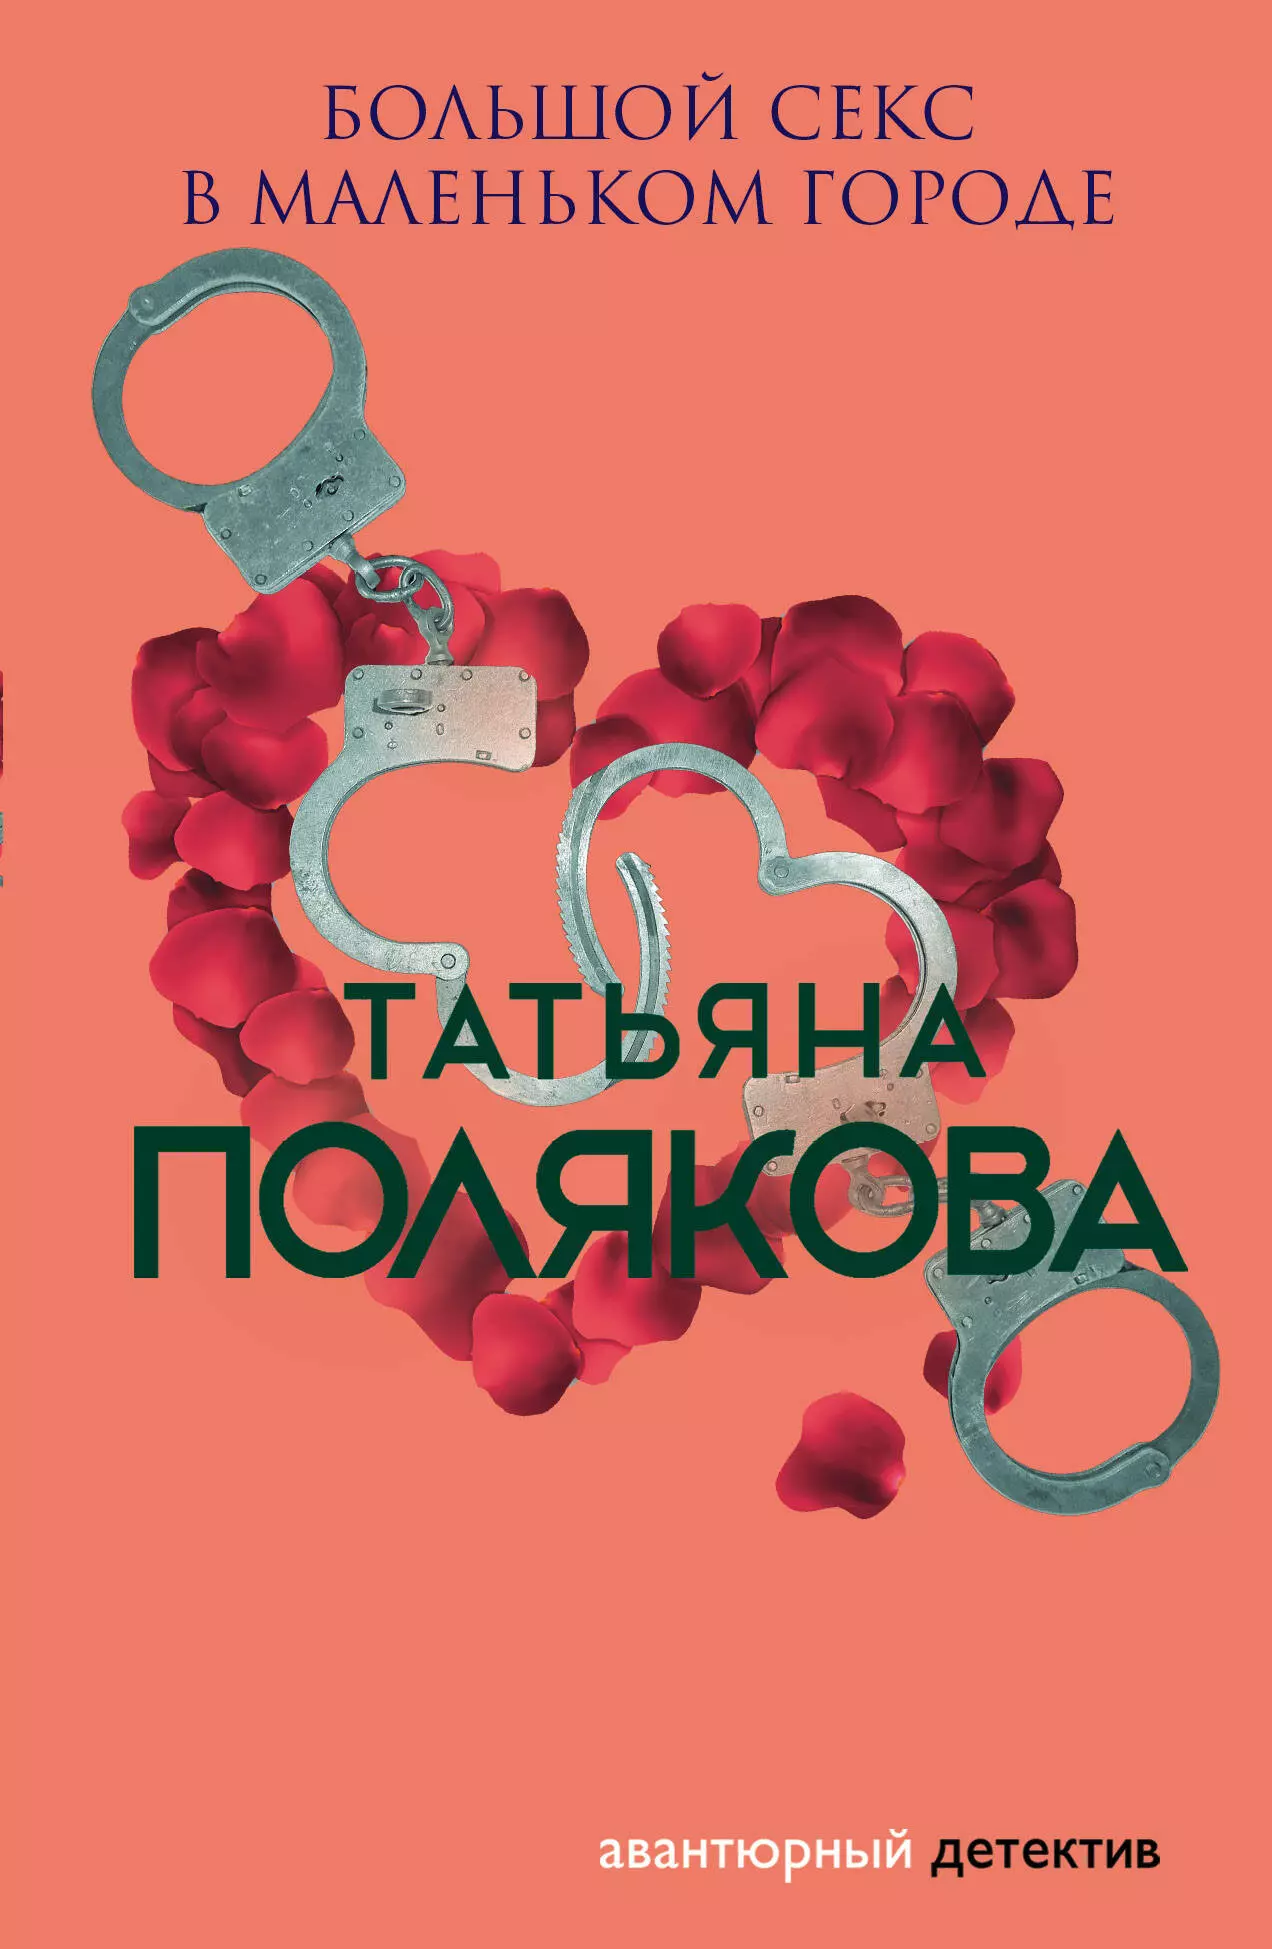 Полякова Татьяна Викторовна - Большой секс в маленьком городе